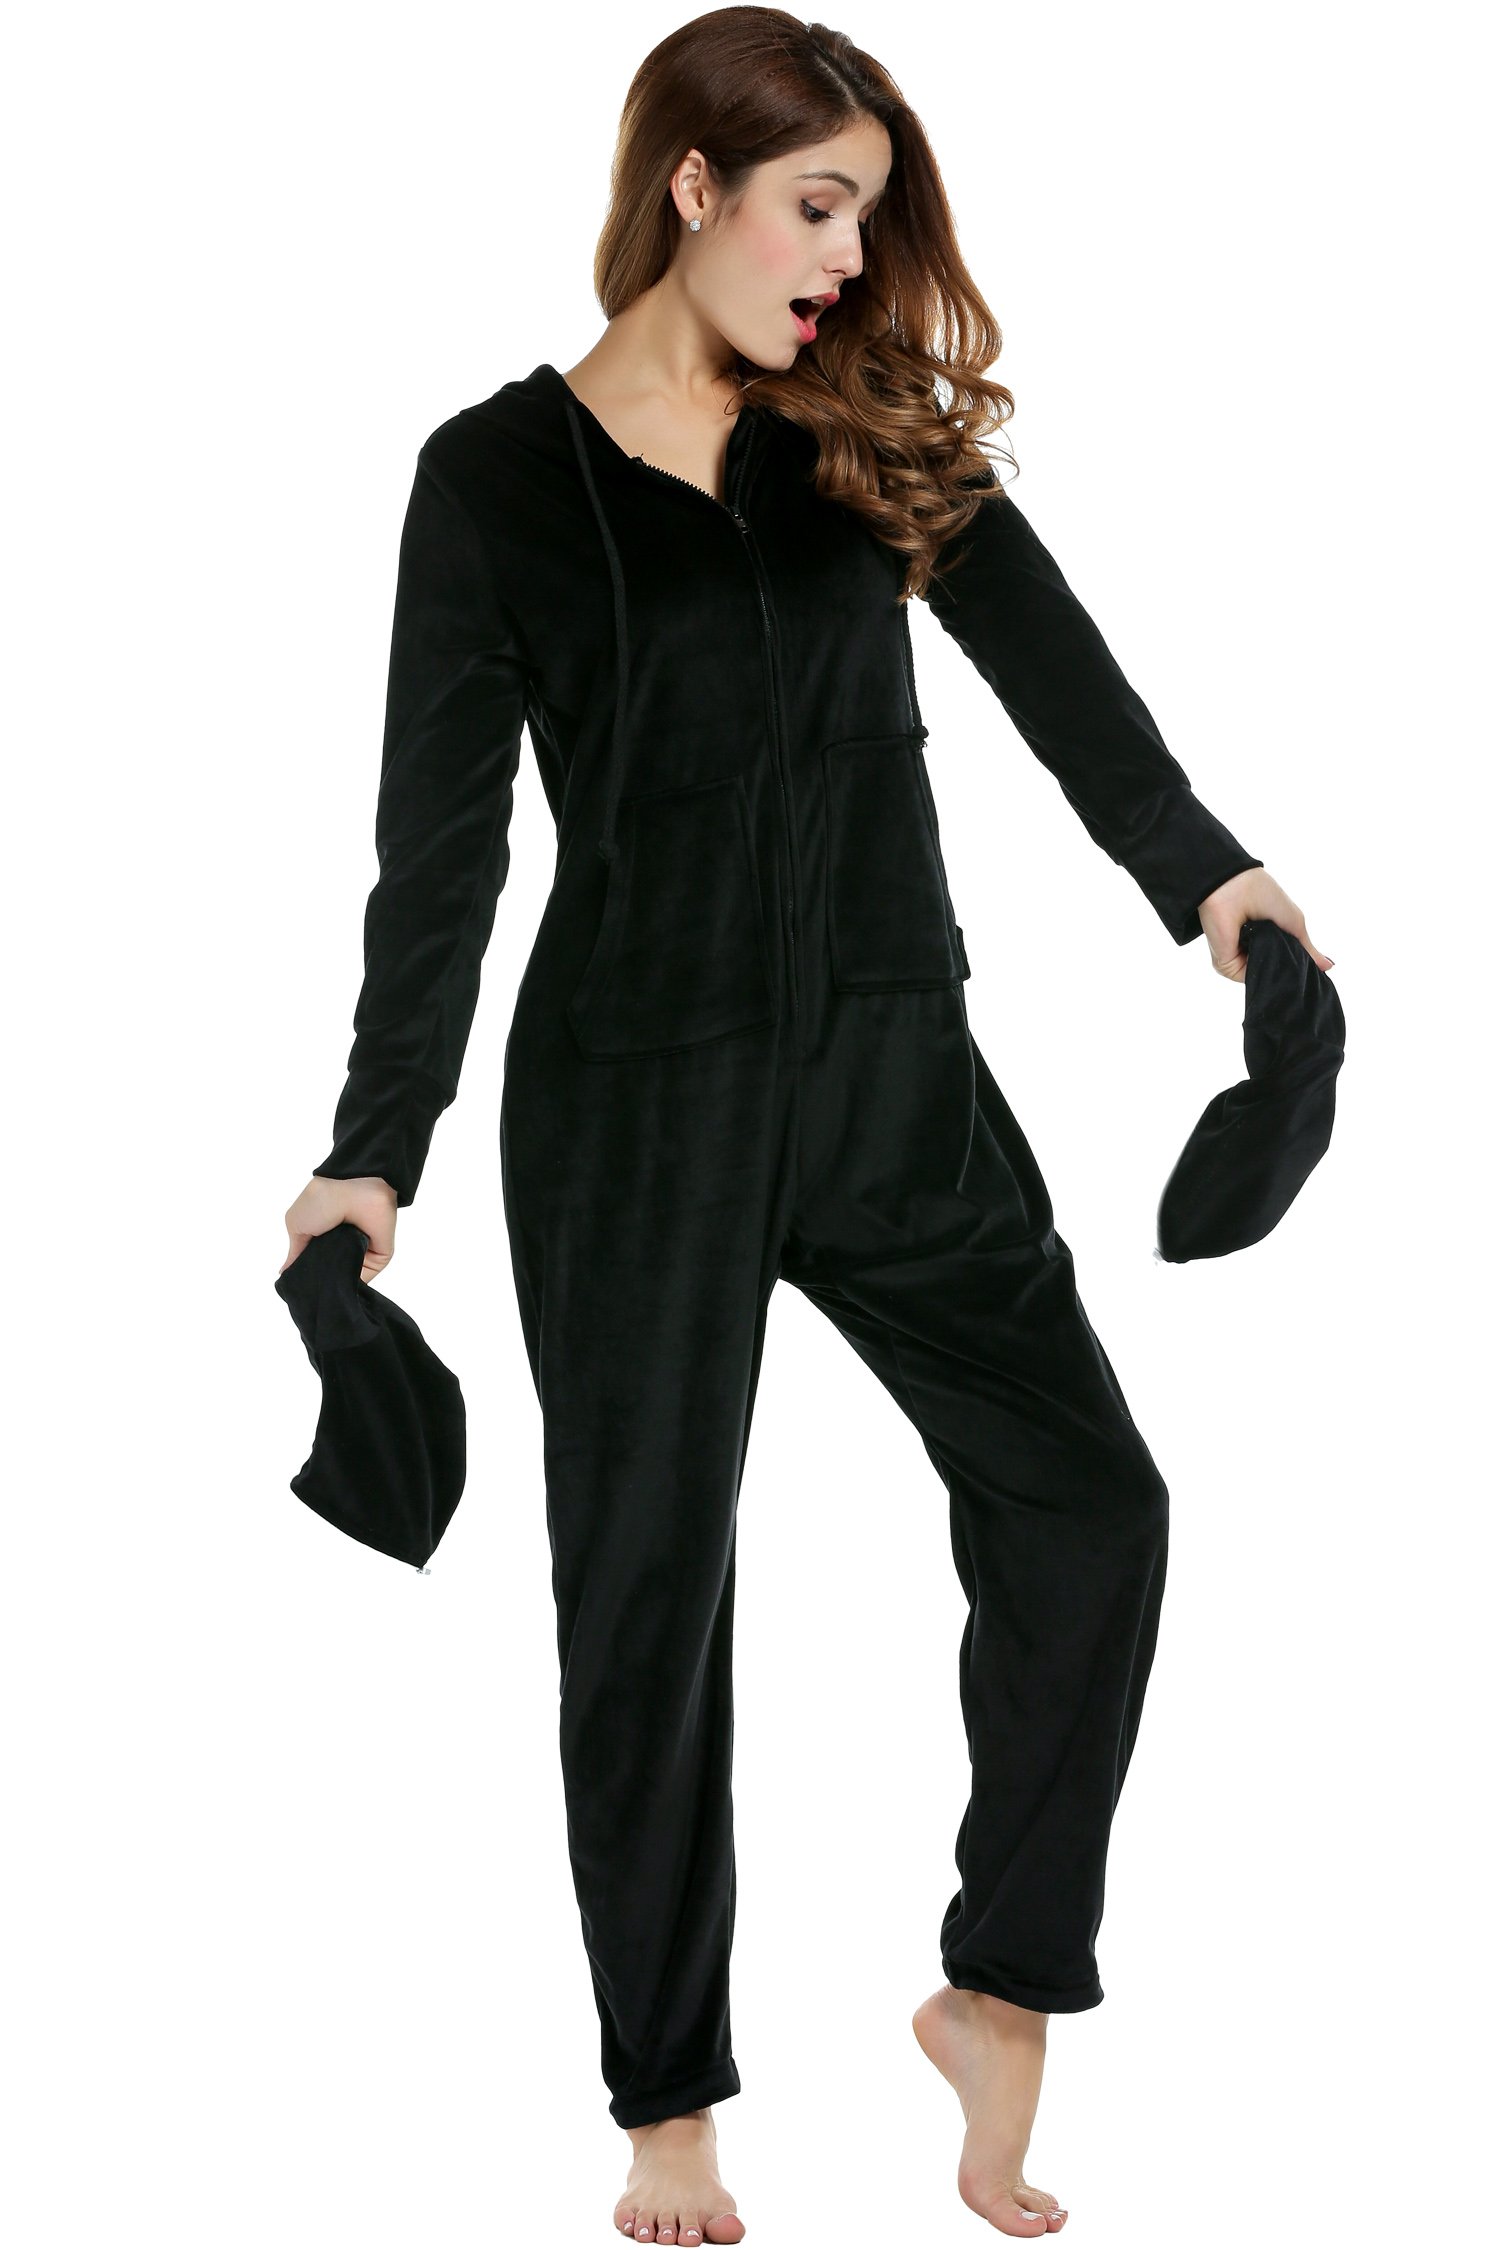 UNibelle Damen Erwachsenenstrampler Schlafoverall Pyjama Schlafanzug Jumpsuit mit Fen Schwarz L